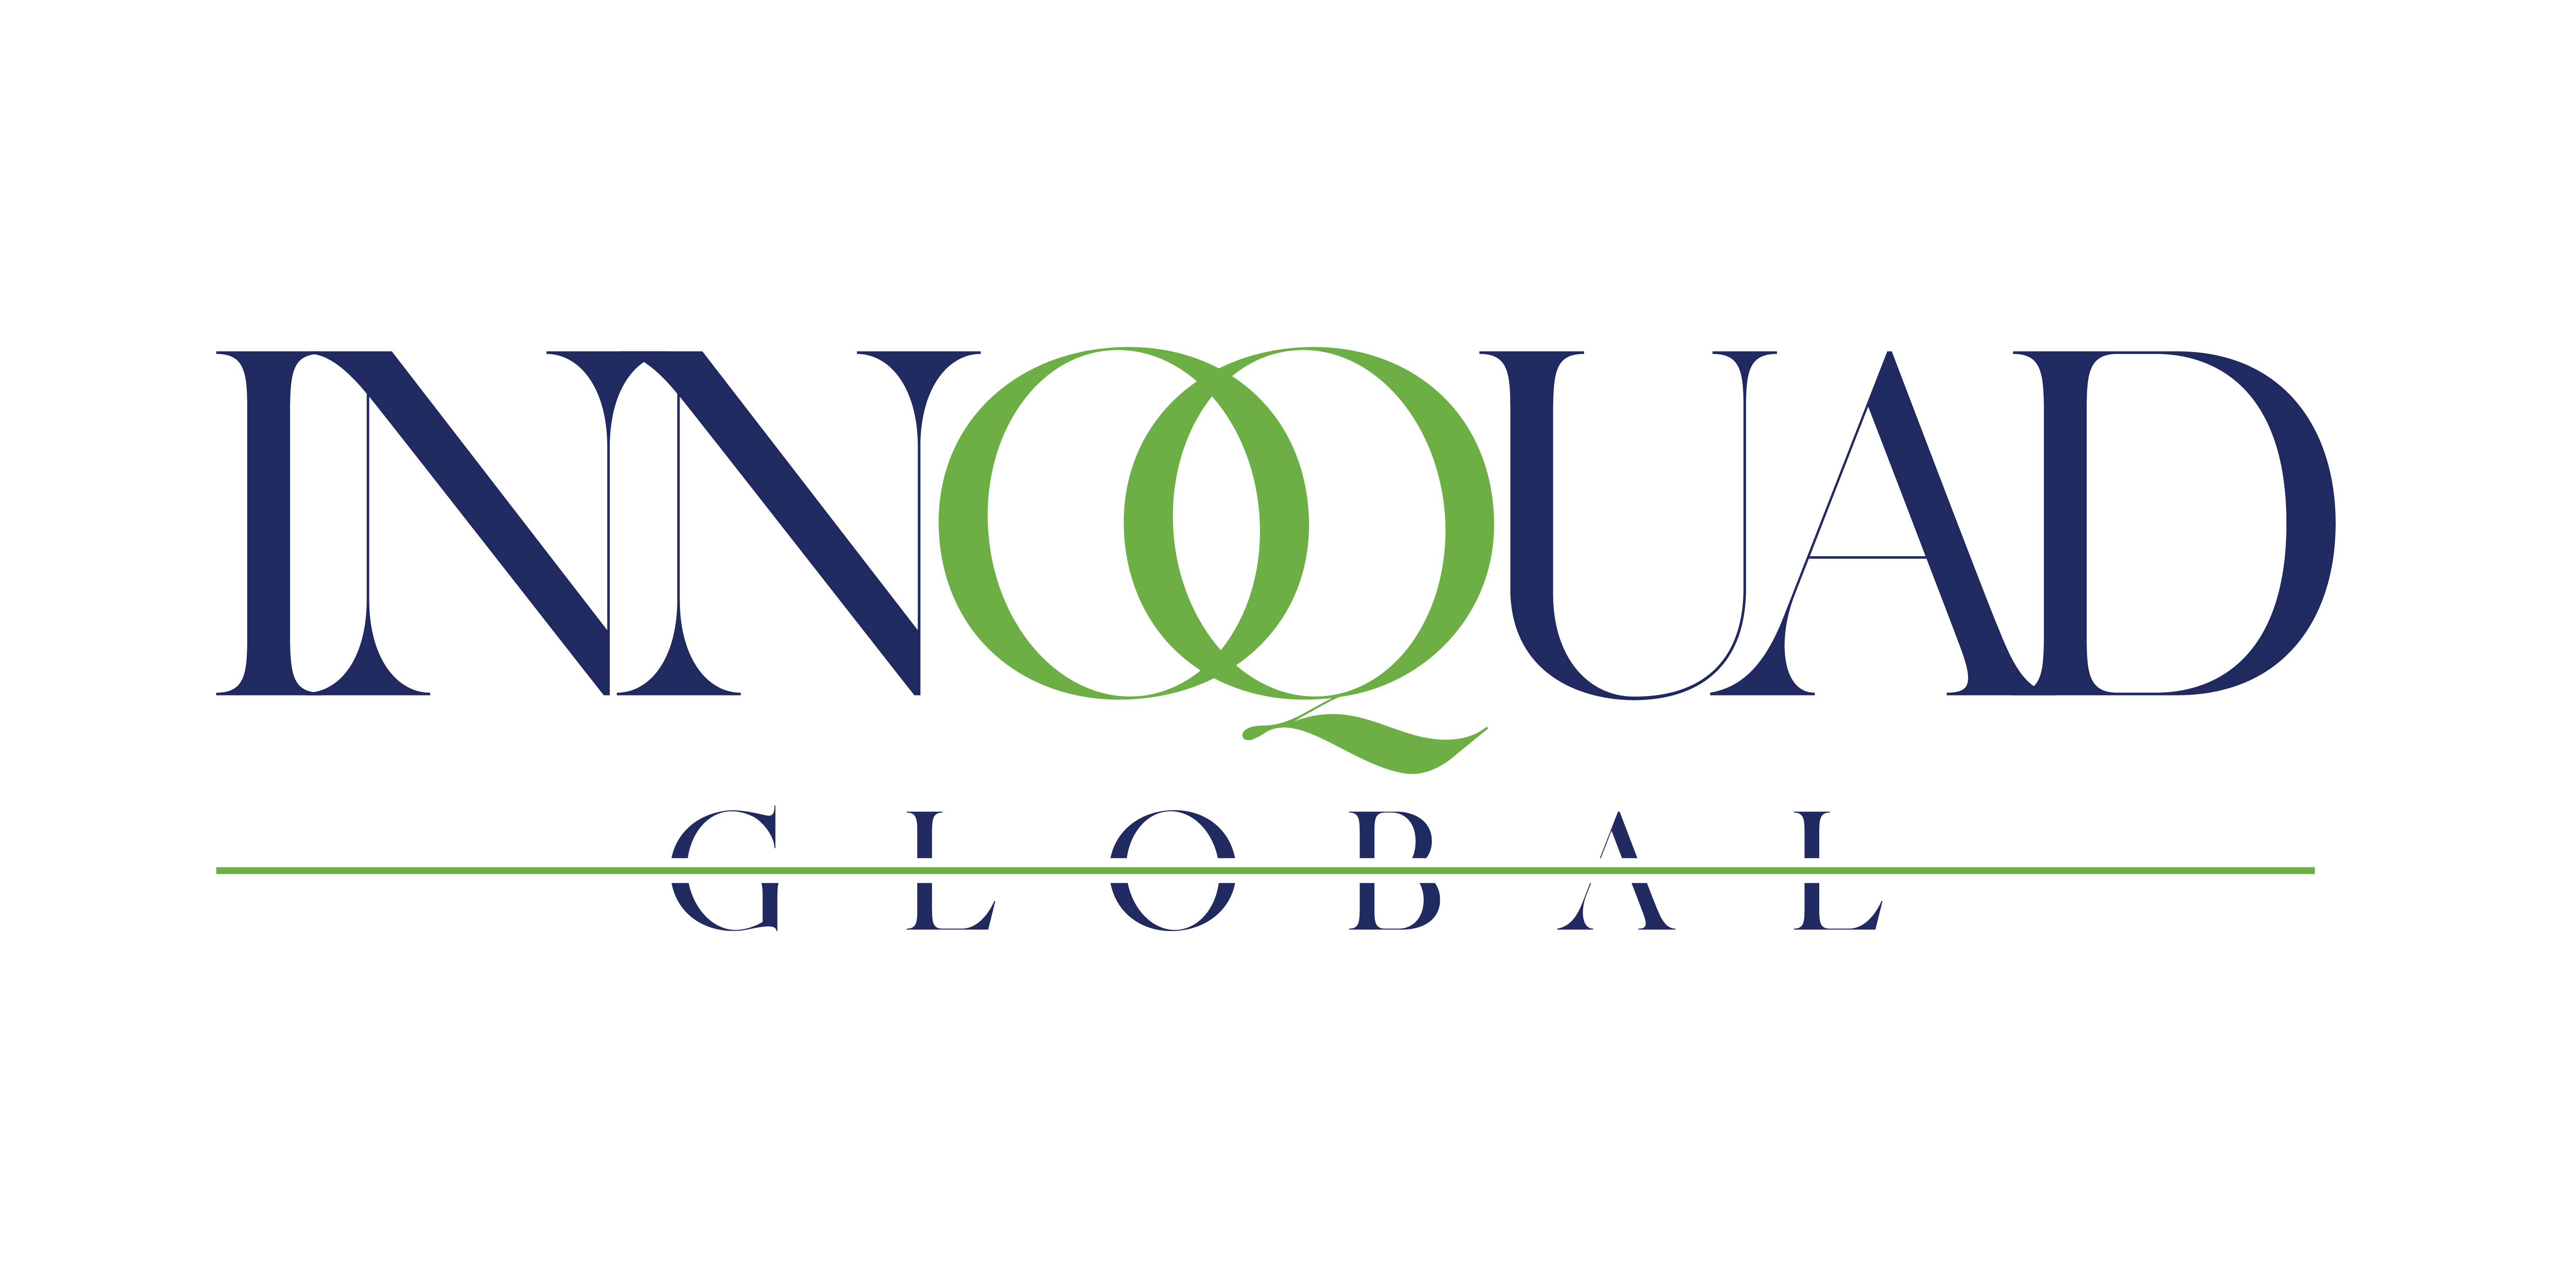 InnoQuad Global